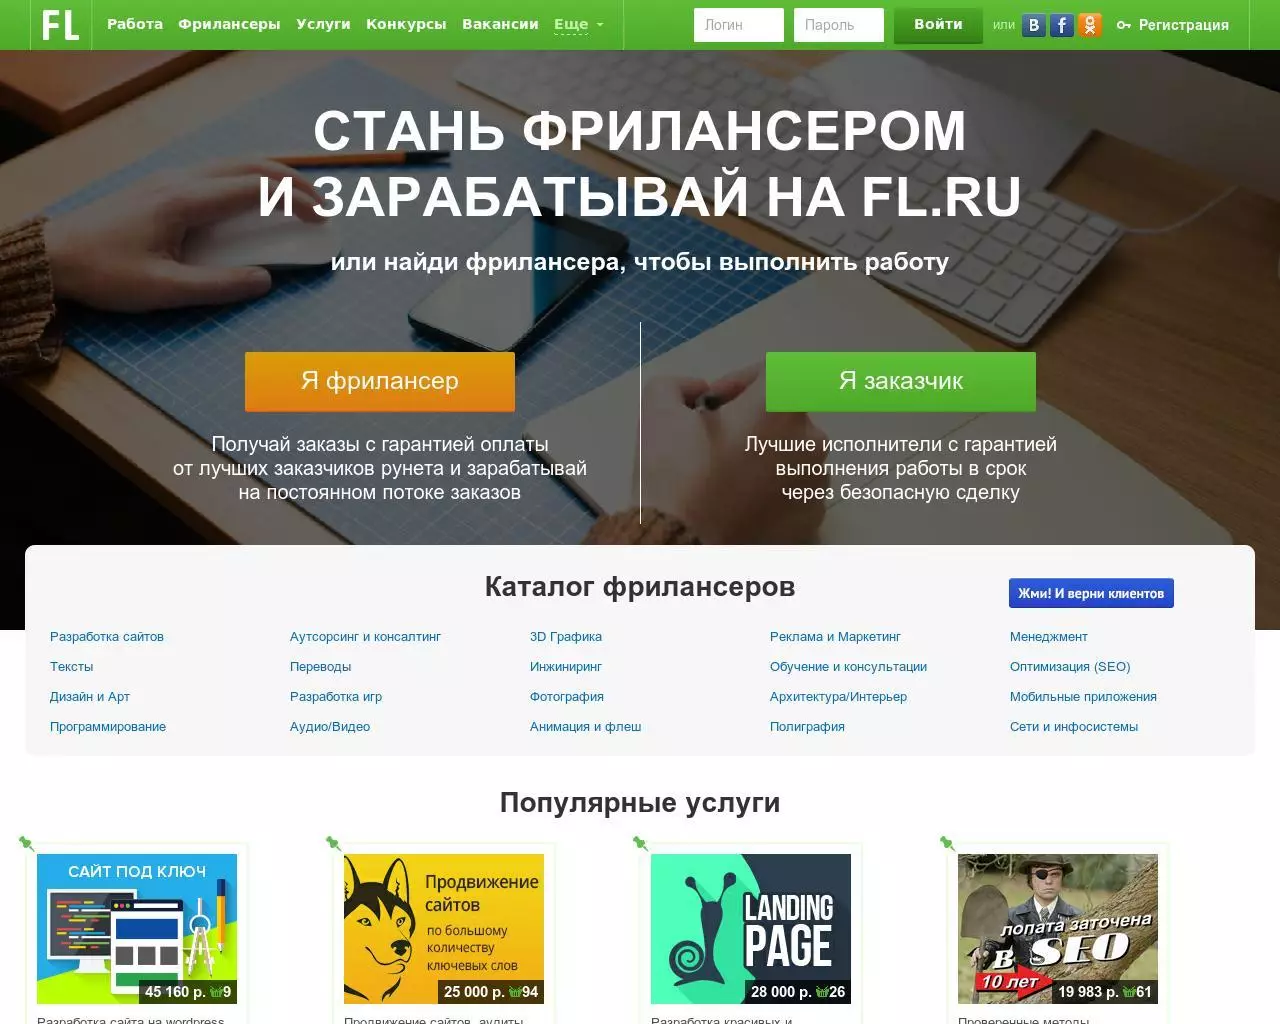 Trao đổi Freelancer: Địa điểm ở Nga và các quốc gia khác cho người mới bắt đầu không có kinh nghiệm làm việc, trao đổi lao động cho những người mới lập trình viên và dịch giả 7278_14